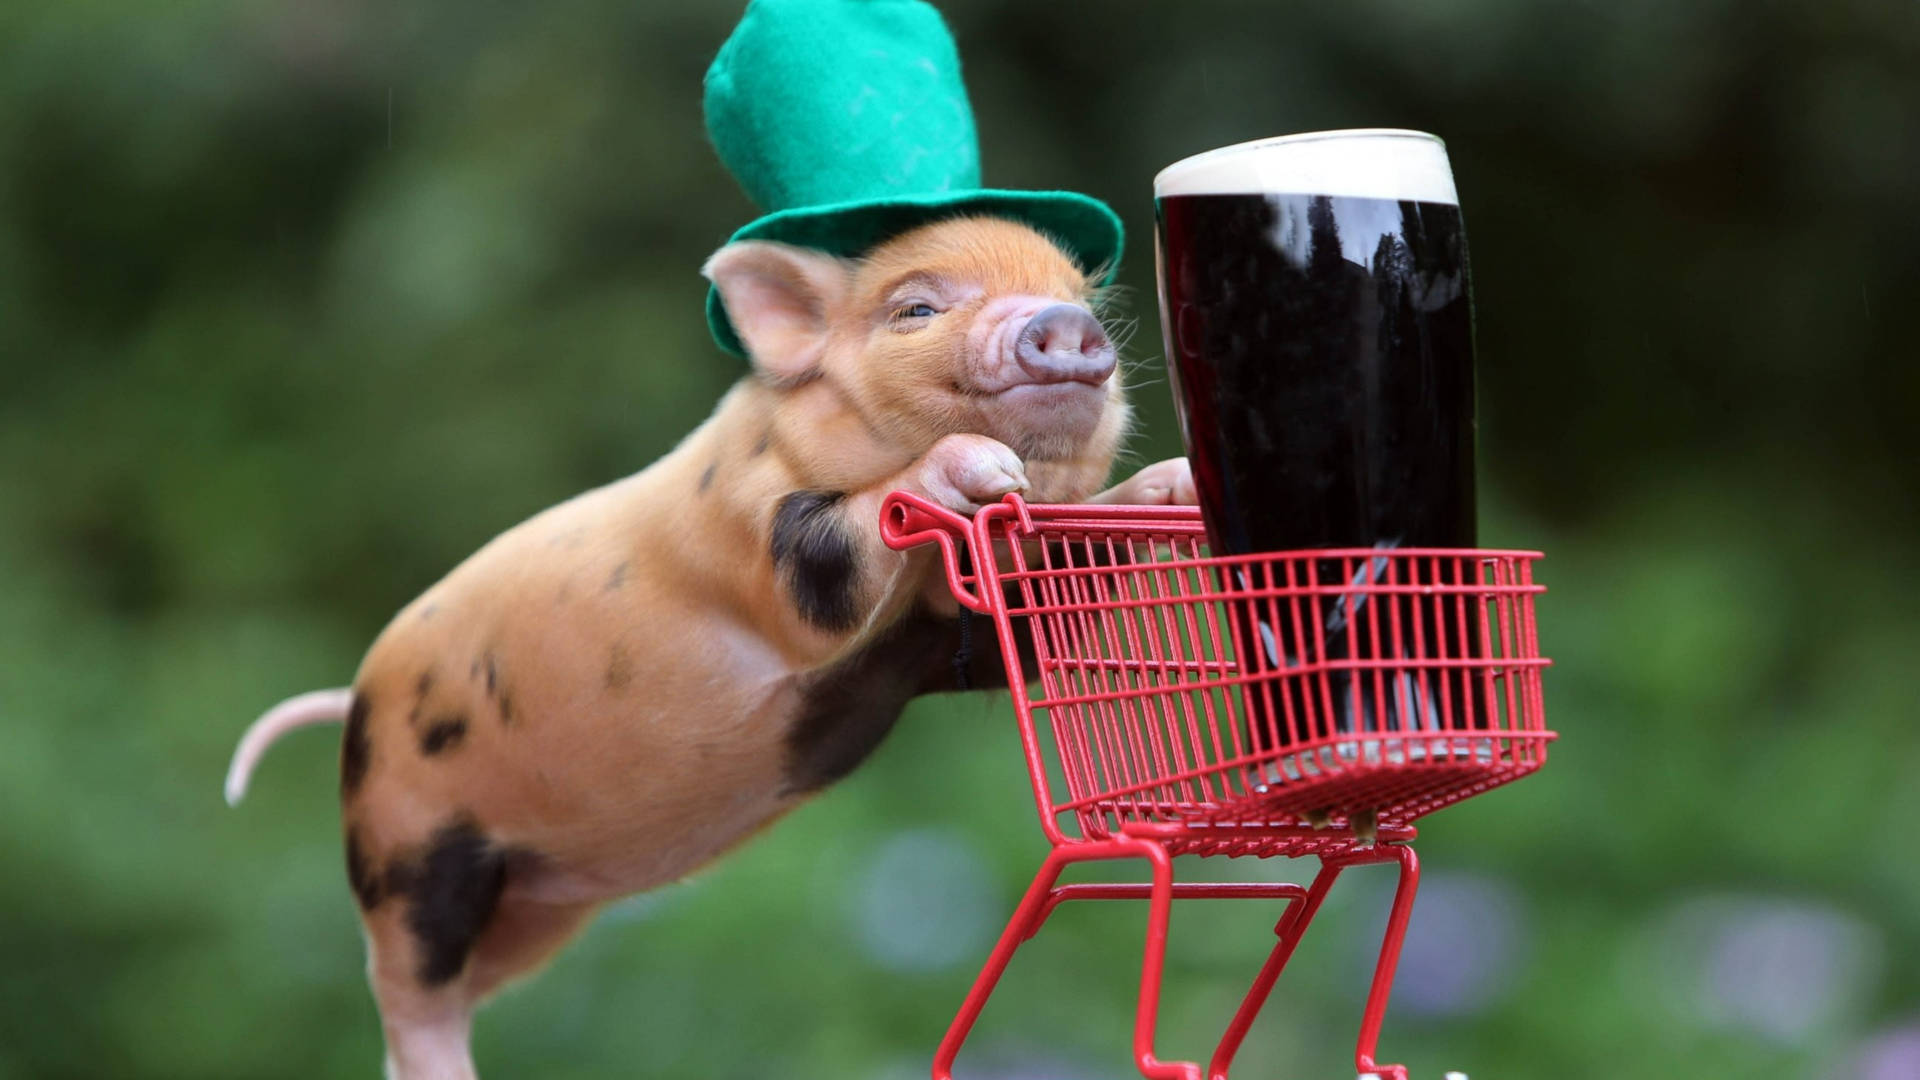 Pig At Saint Patrick's Day